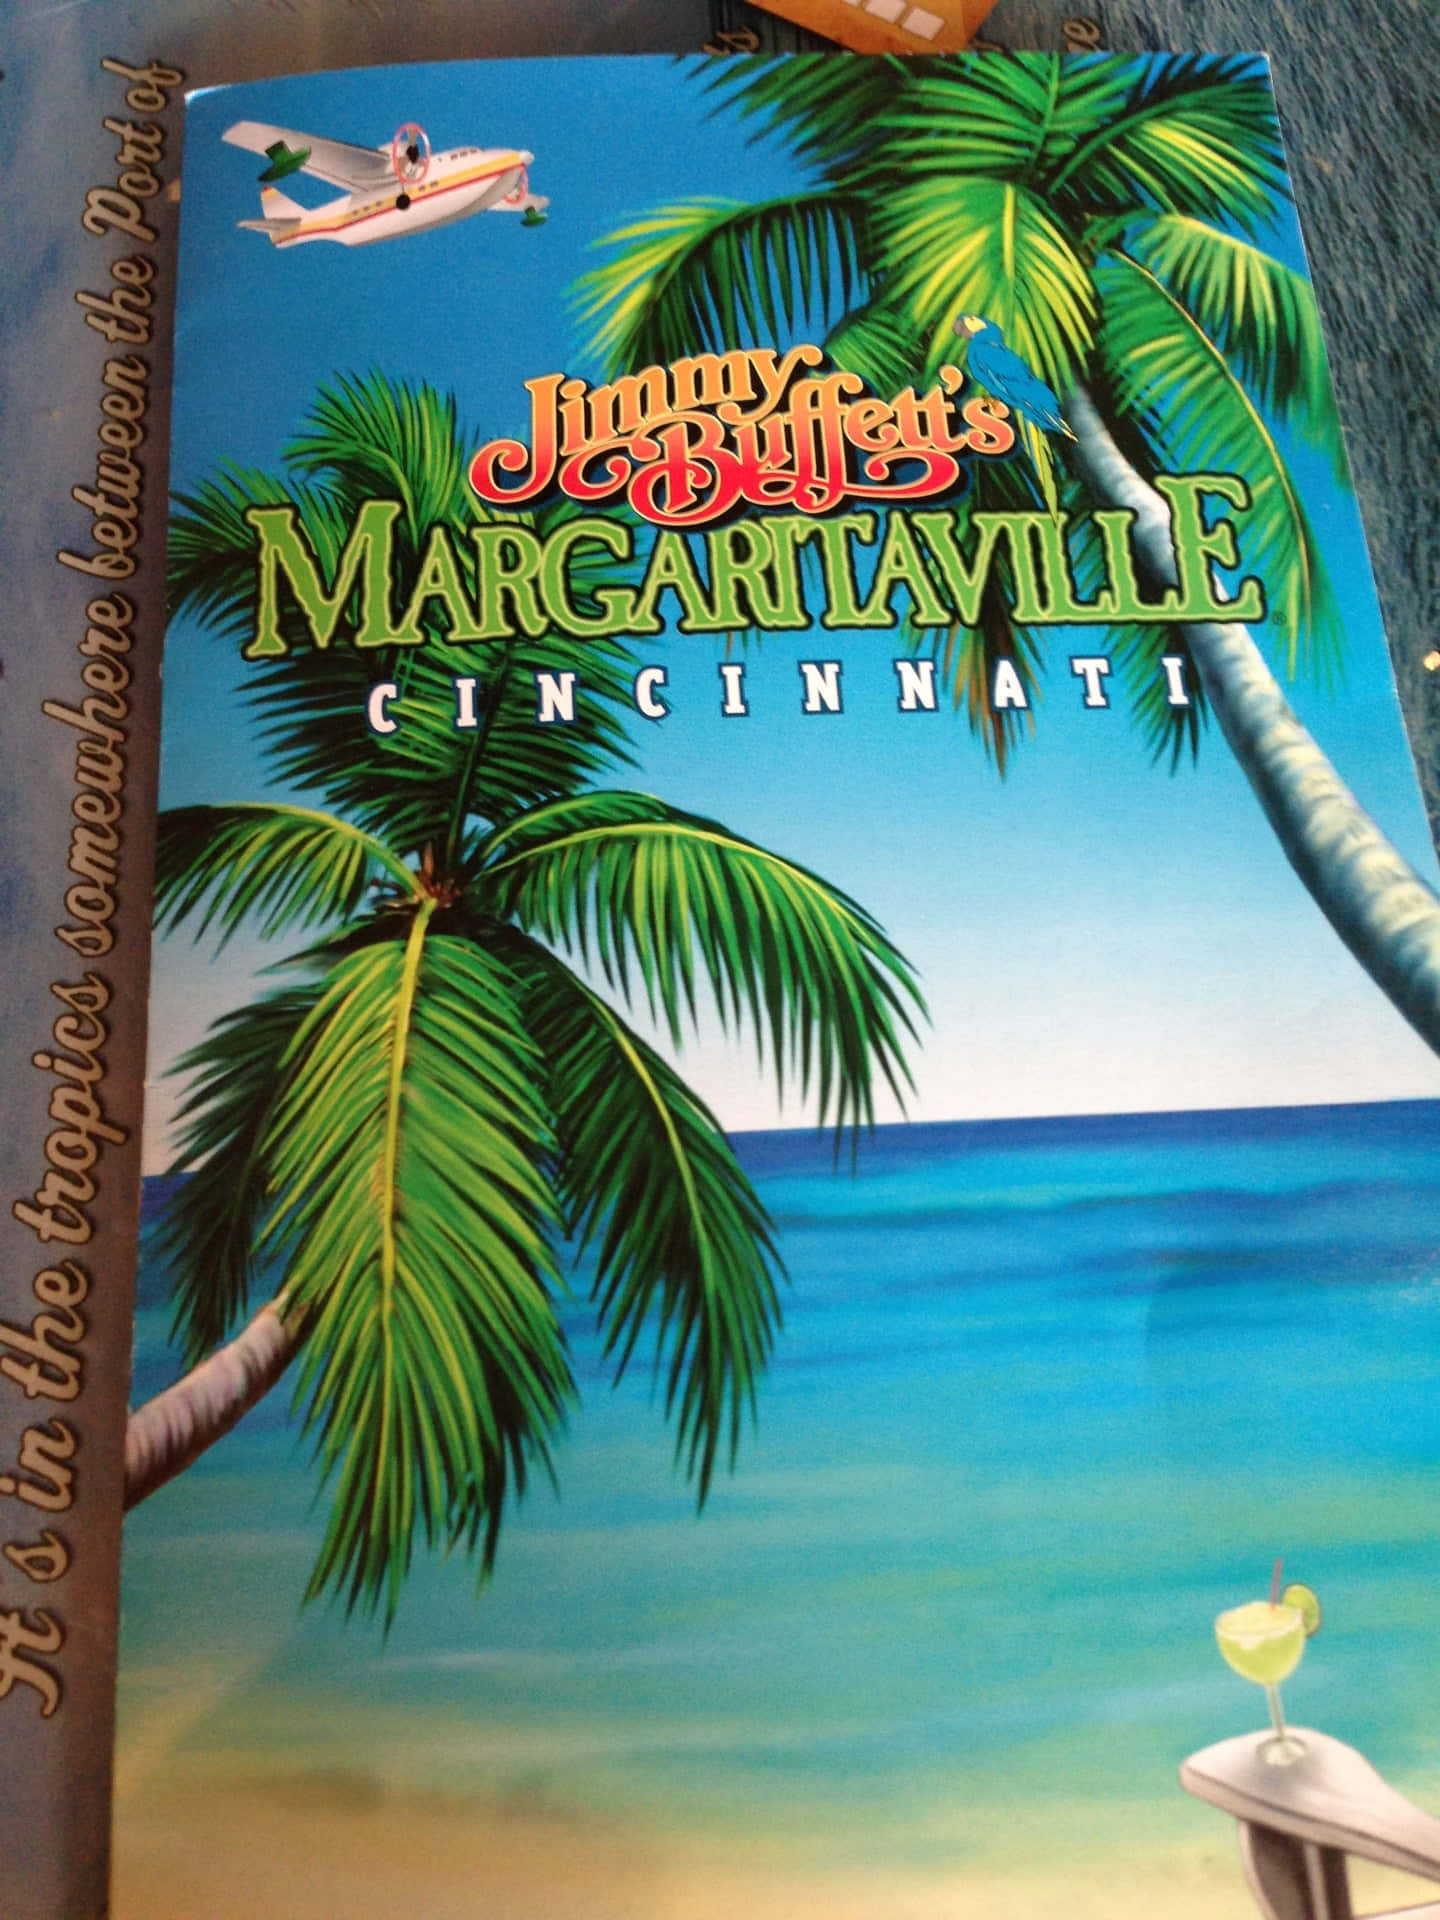 Margaritaville Tema Restaurant Menu Wallpaper – Træd ind i et varmt tropisk inspireret miljø. Wallpaper